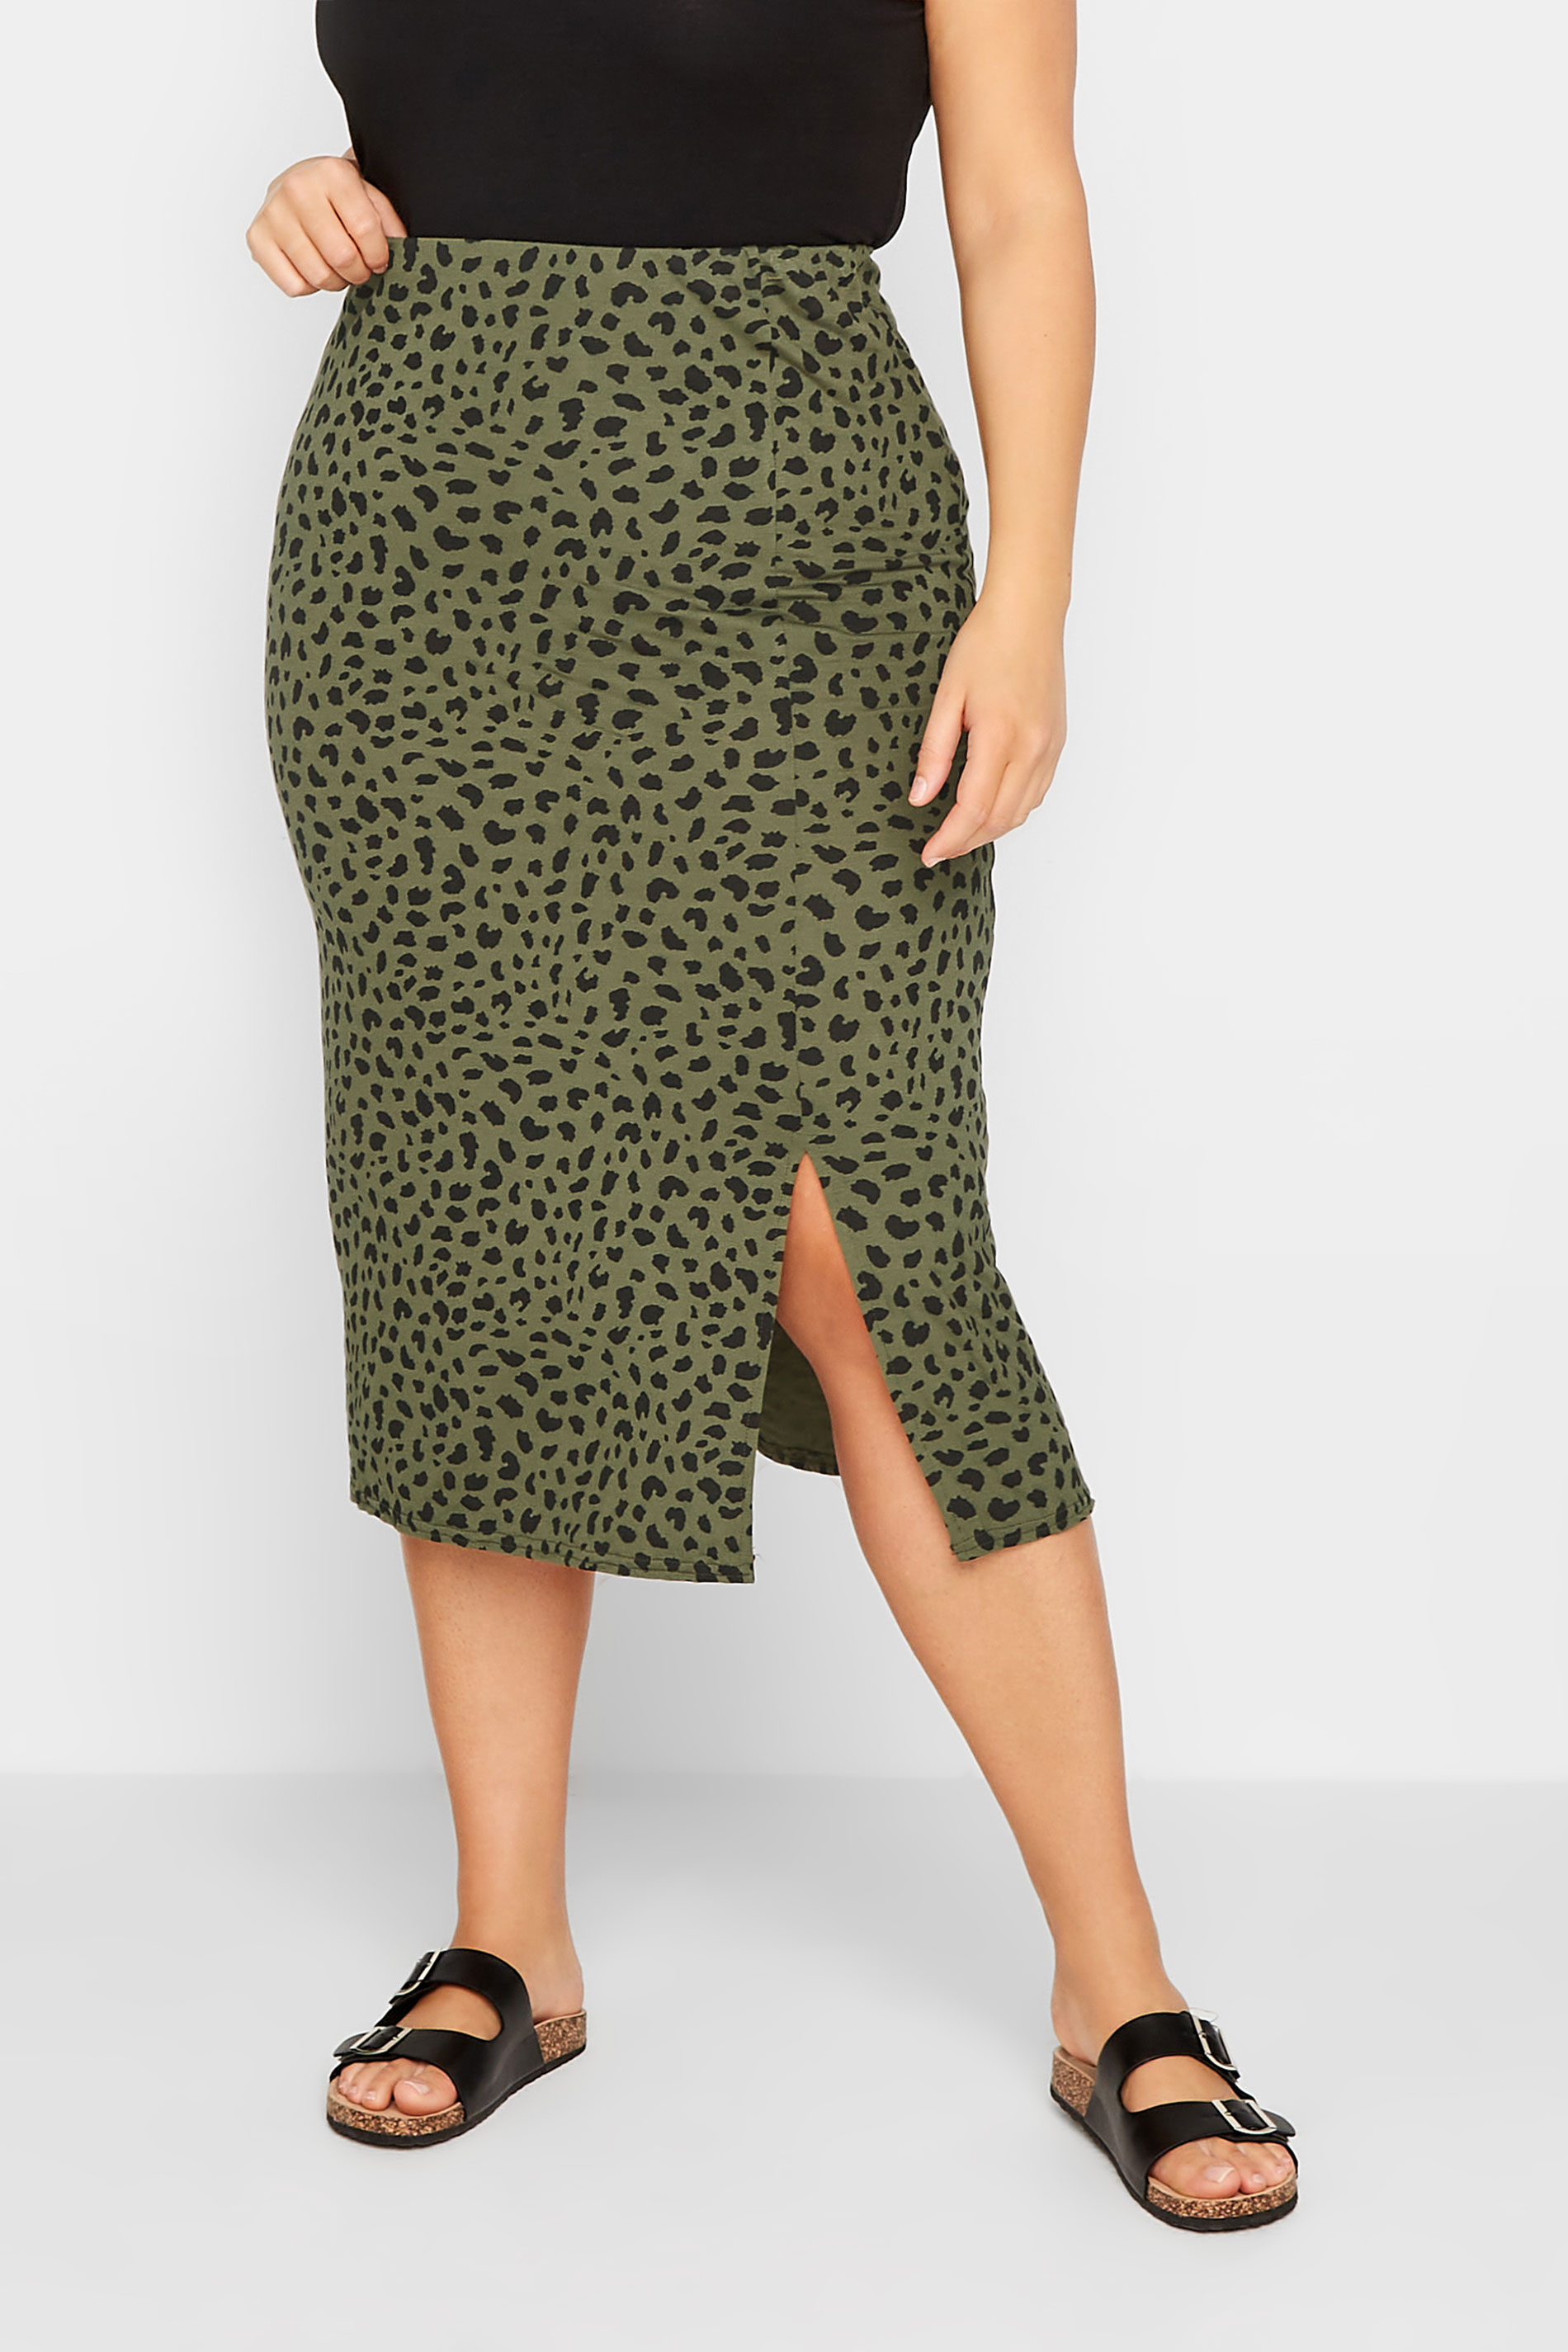 LTS Tall Women's Khaki Green Dalmatian Print Midi Skirt | Long Tall Sally 1